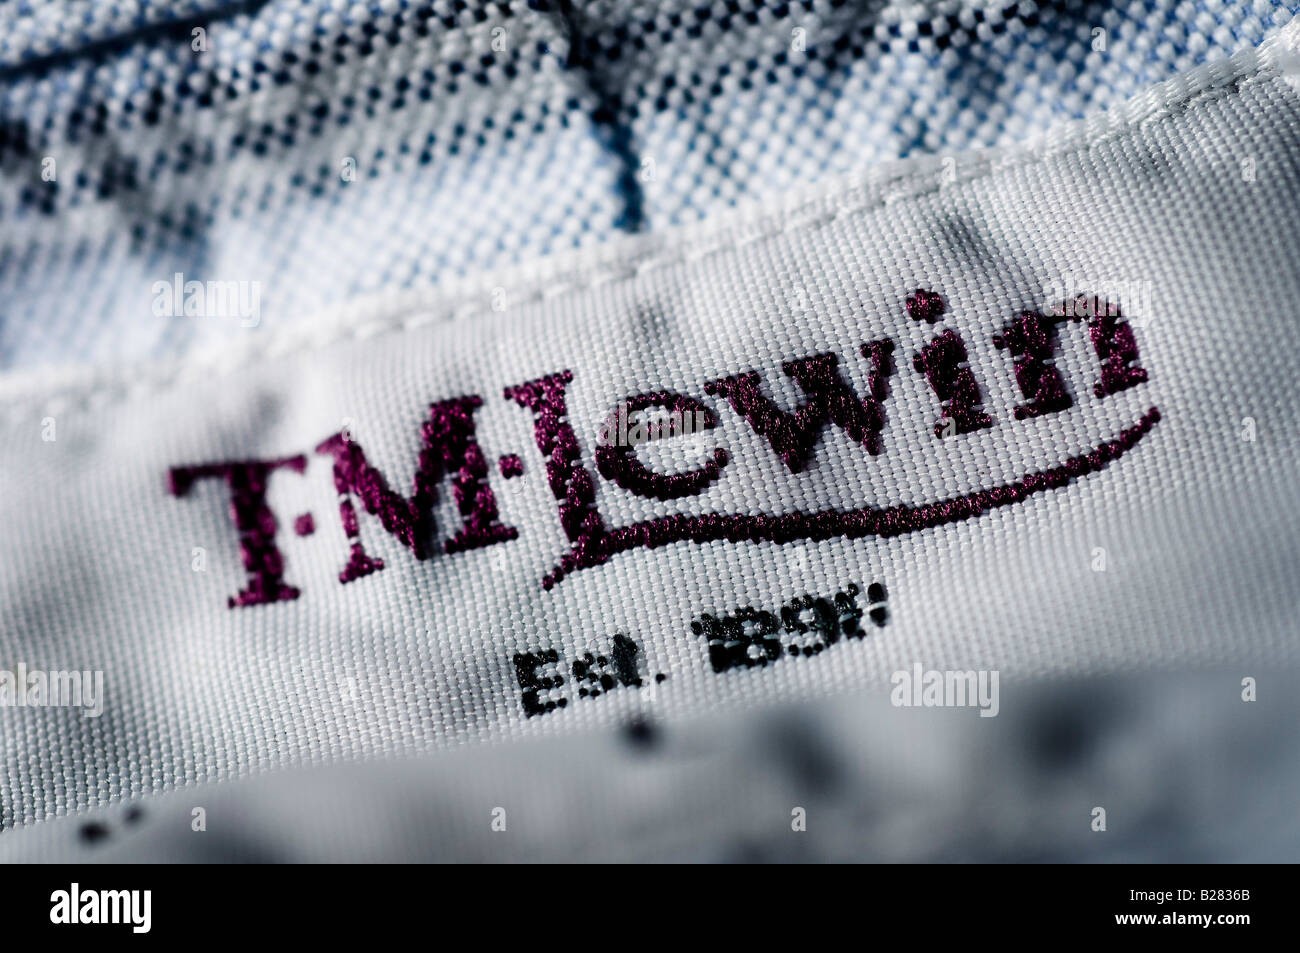 TM Lewin women's shirts